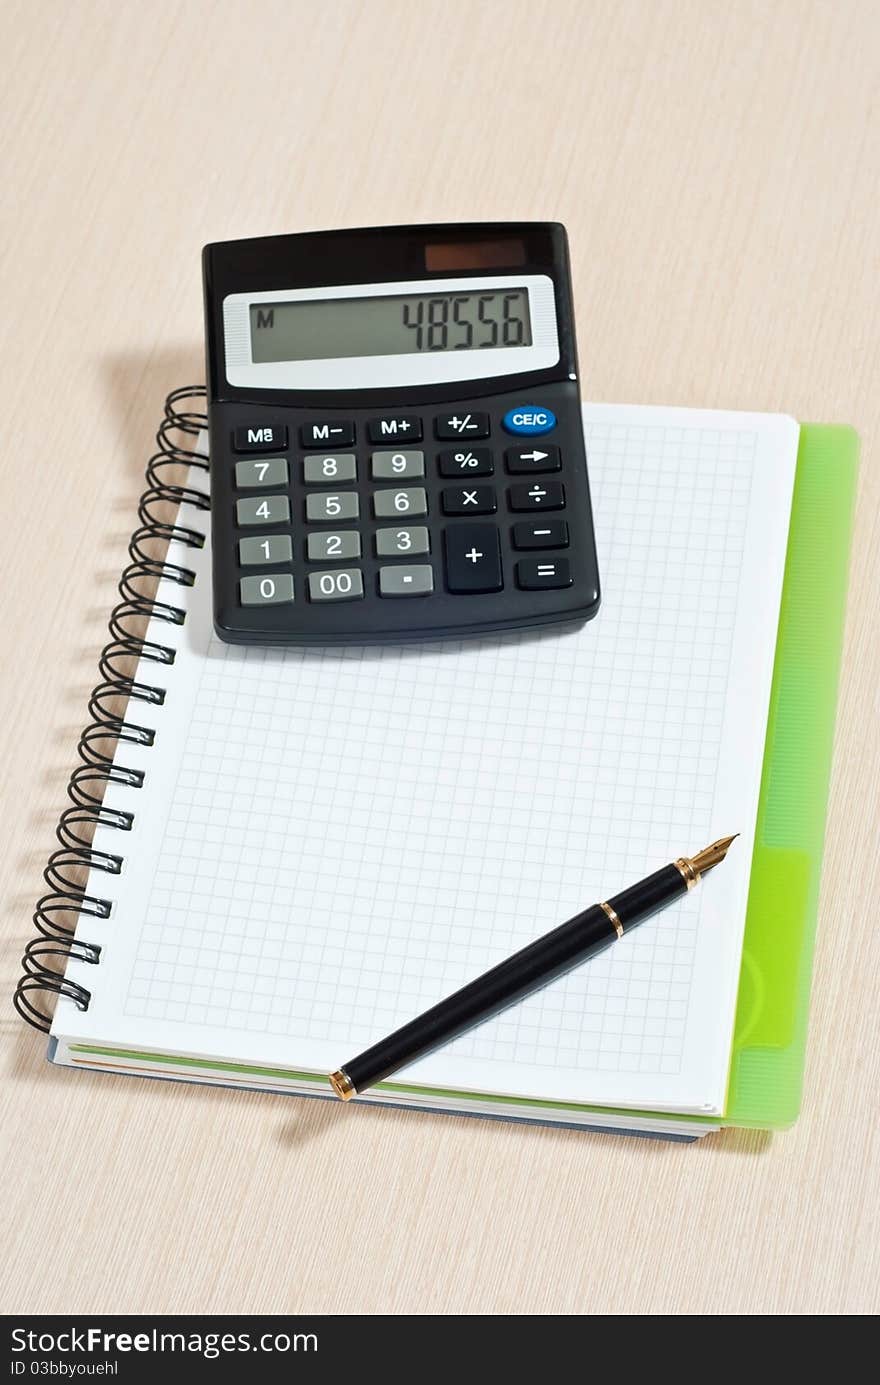 Notebook, ballpen and calculator on wooden desk. Notebook, ballpen and calculator on wooden desk